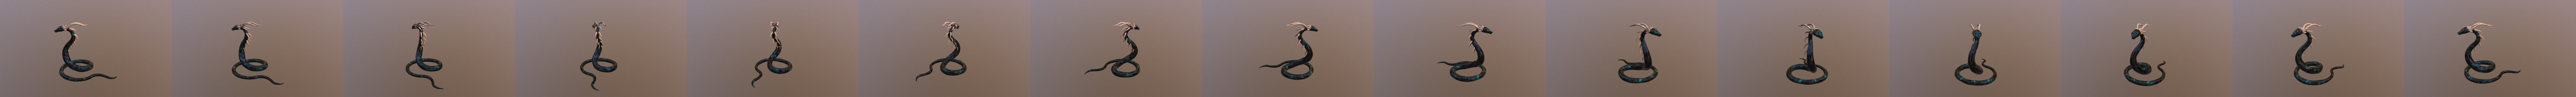 Google Snake - 3D model by Pokych Adams [b16ad42] - Sketchfab